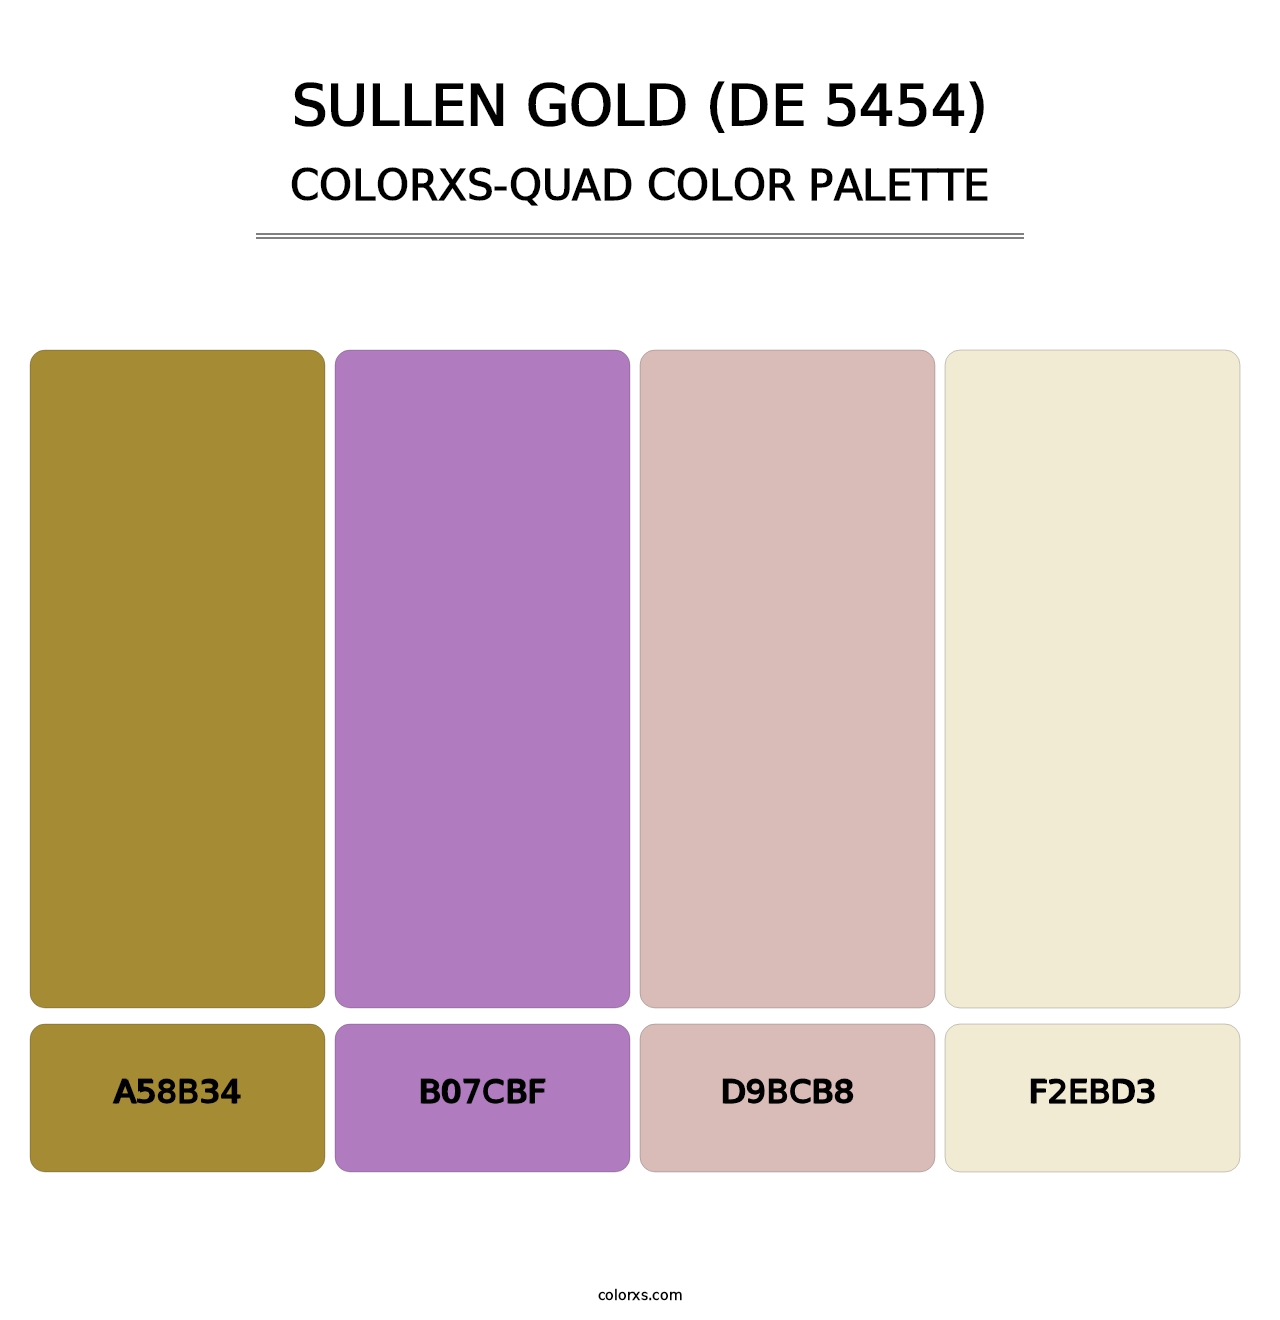 Sullen Gold (DE 5454) - Colorxs Quad Palette